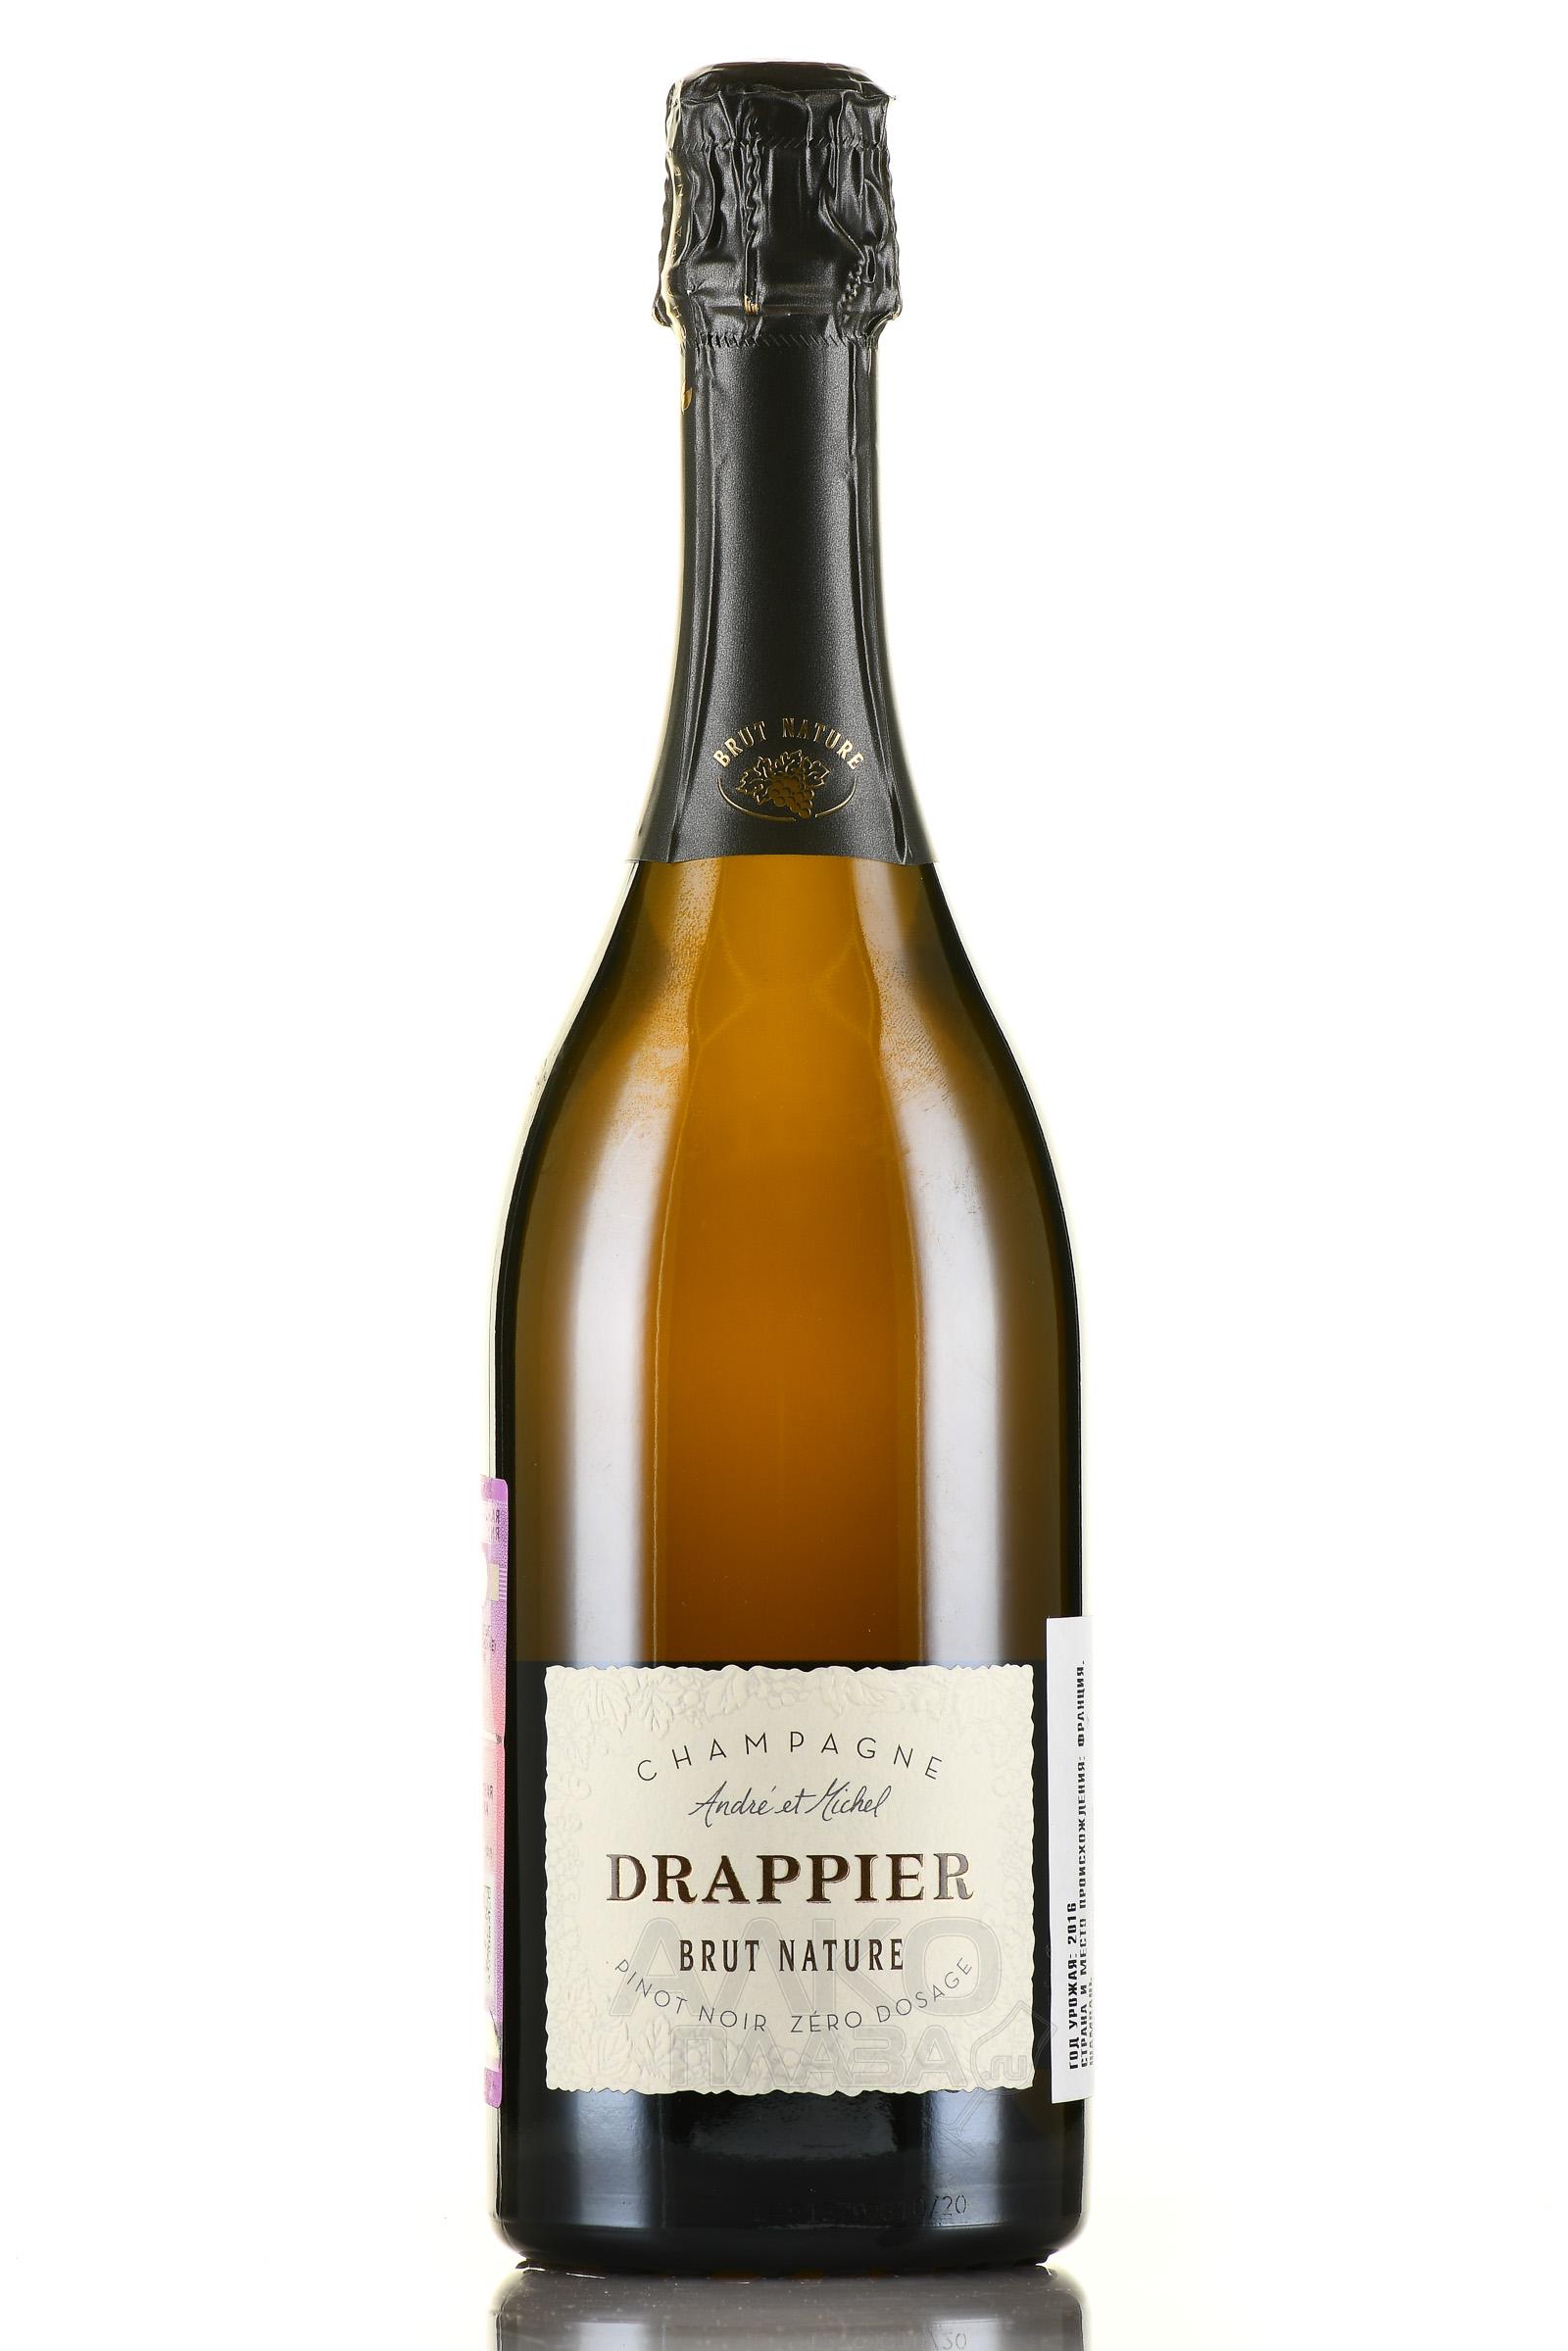 Drappier Brut Nature Pinot Noir Zero Dosage - шампанское Драпье Брют Натюр Зеро Дозаж 0.75 л